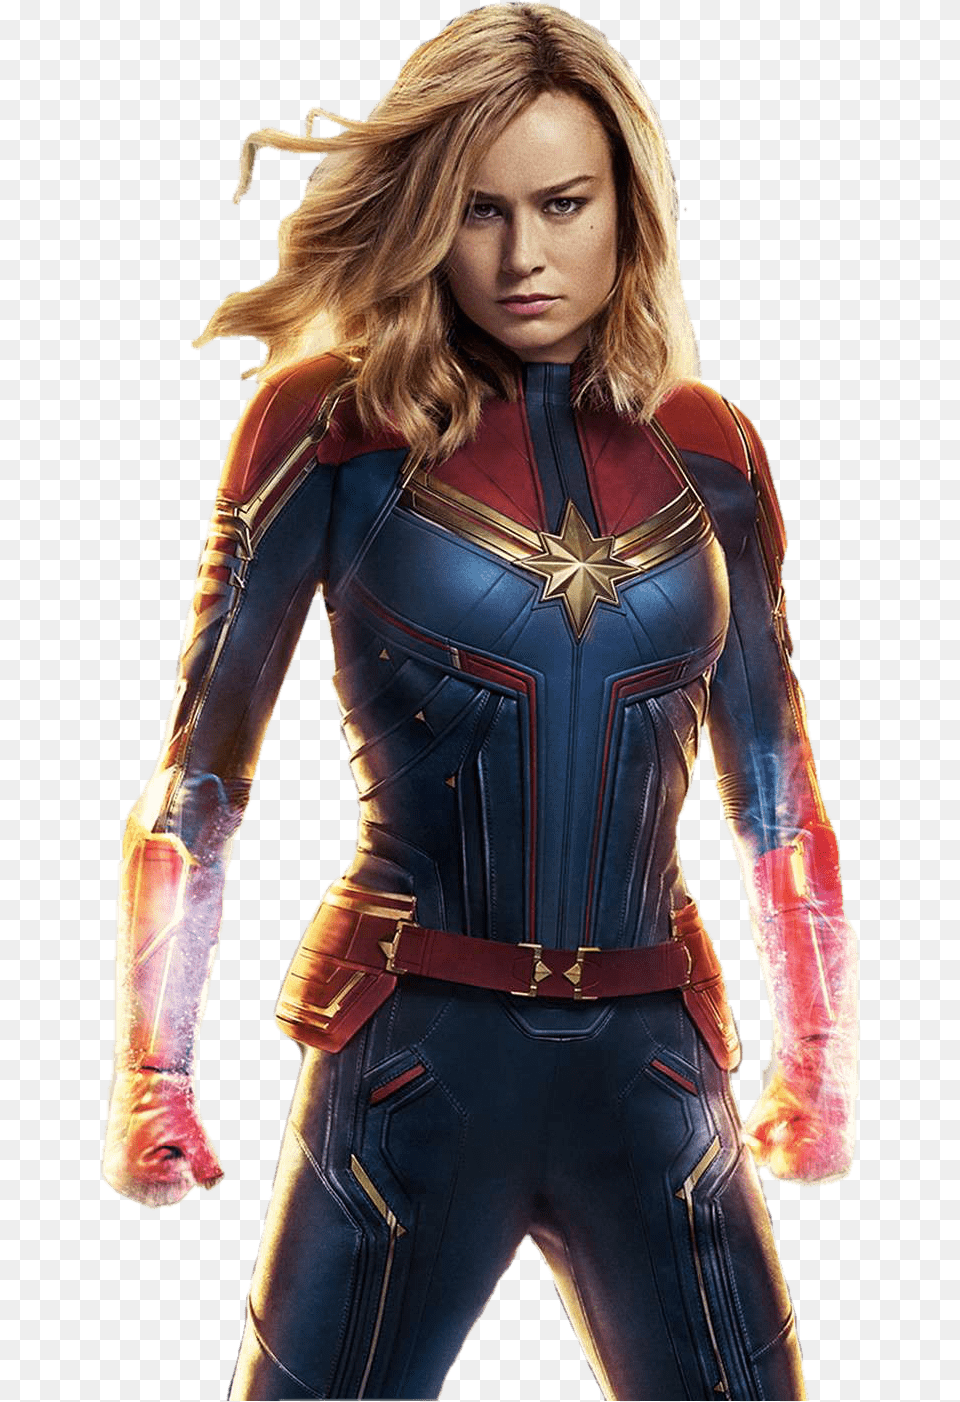 Captain Marvel Images Mcu Captain Marvel Suit, Adult, Person, Jacket, Female Free Transparent Png